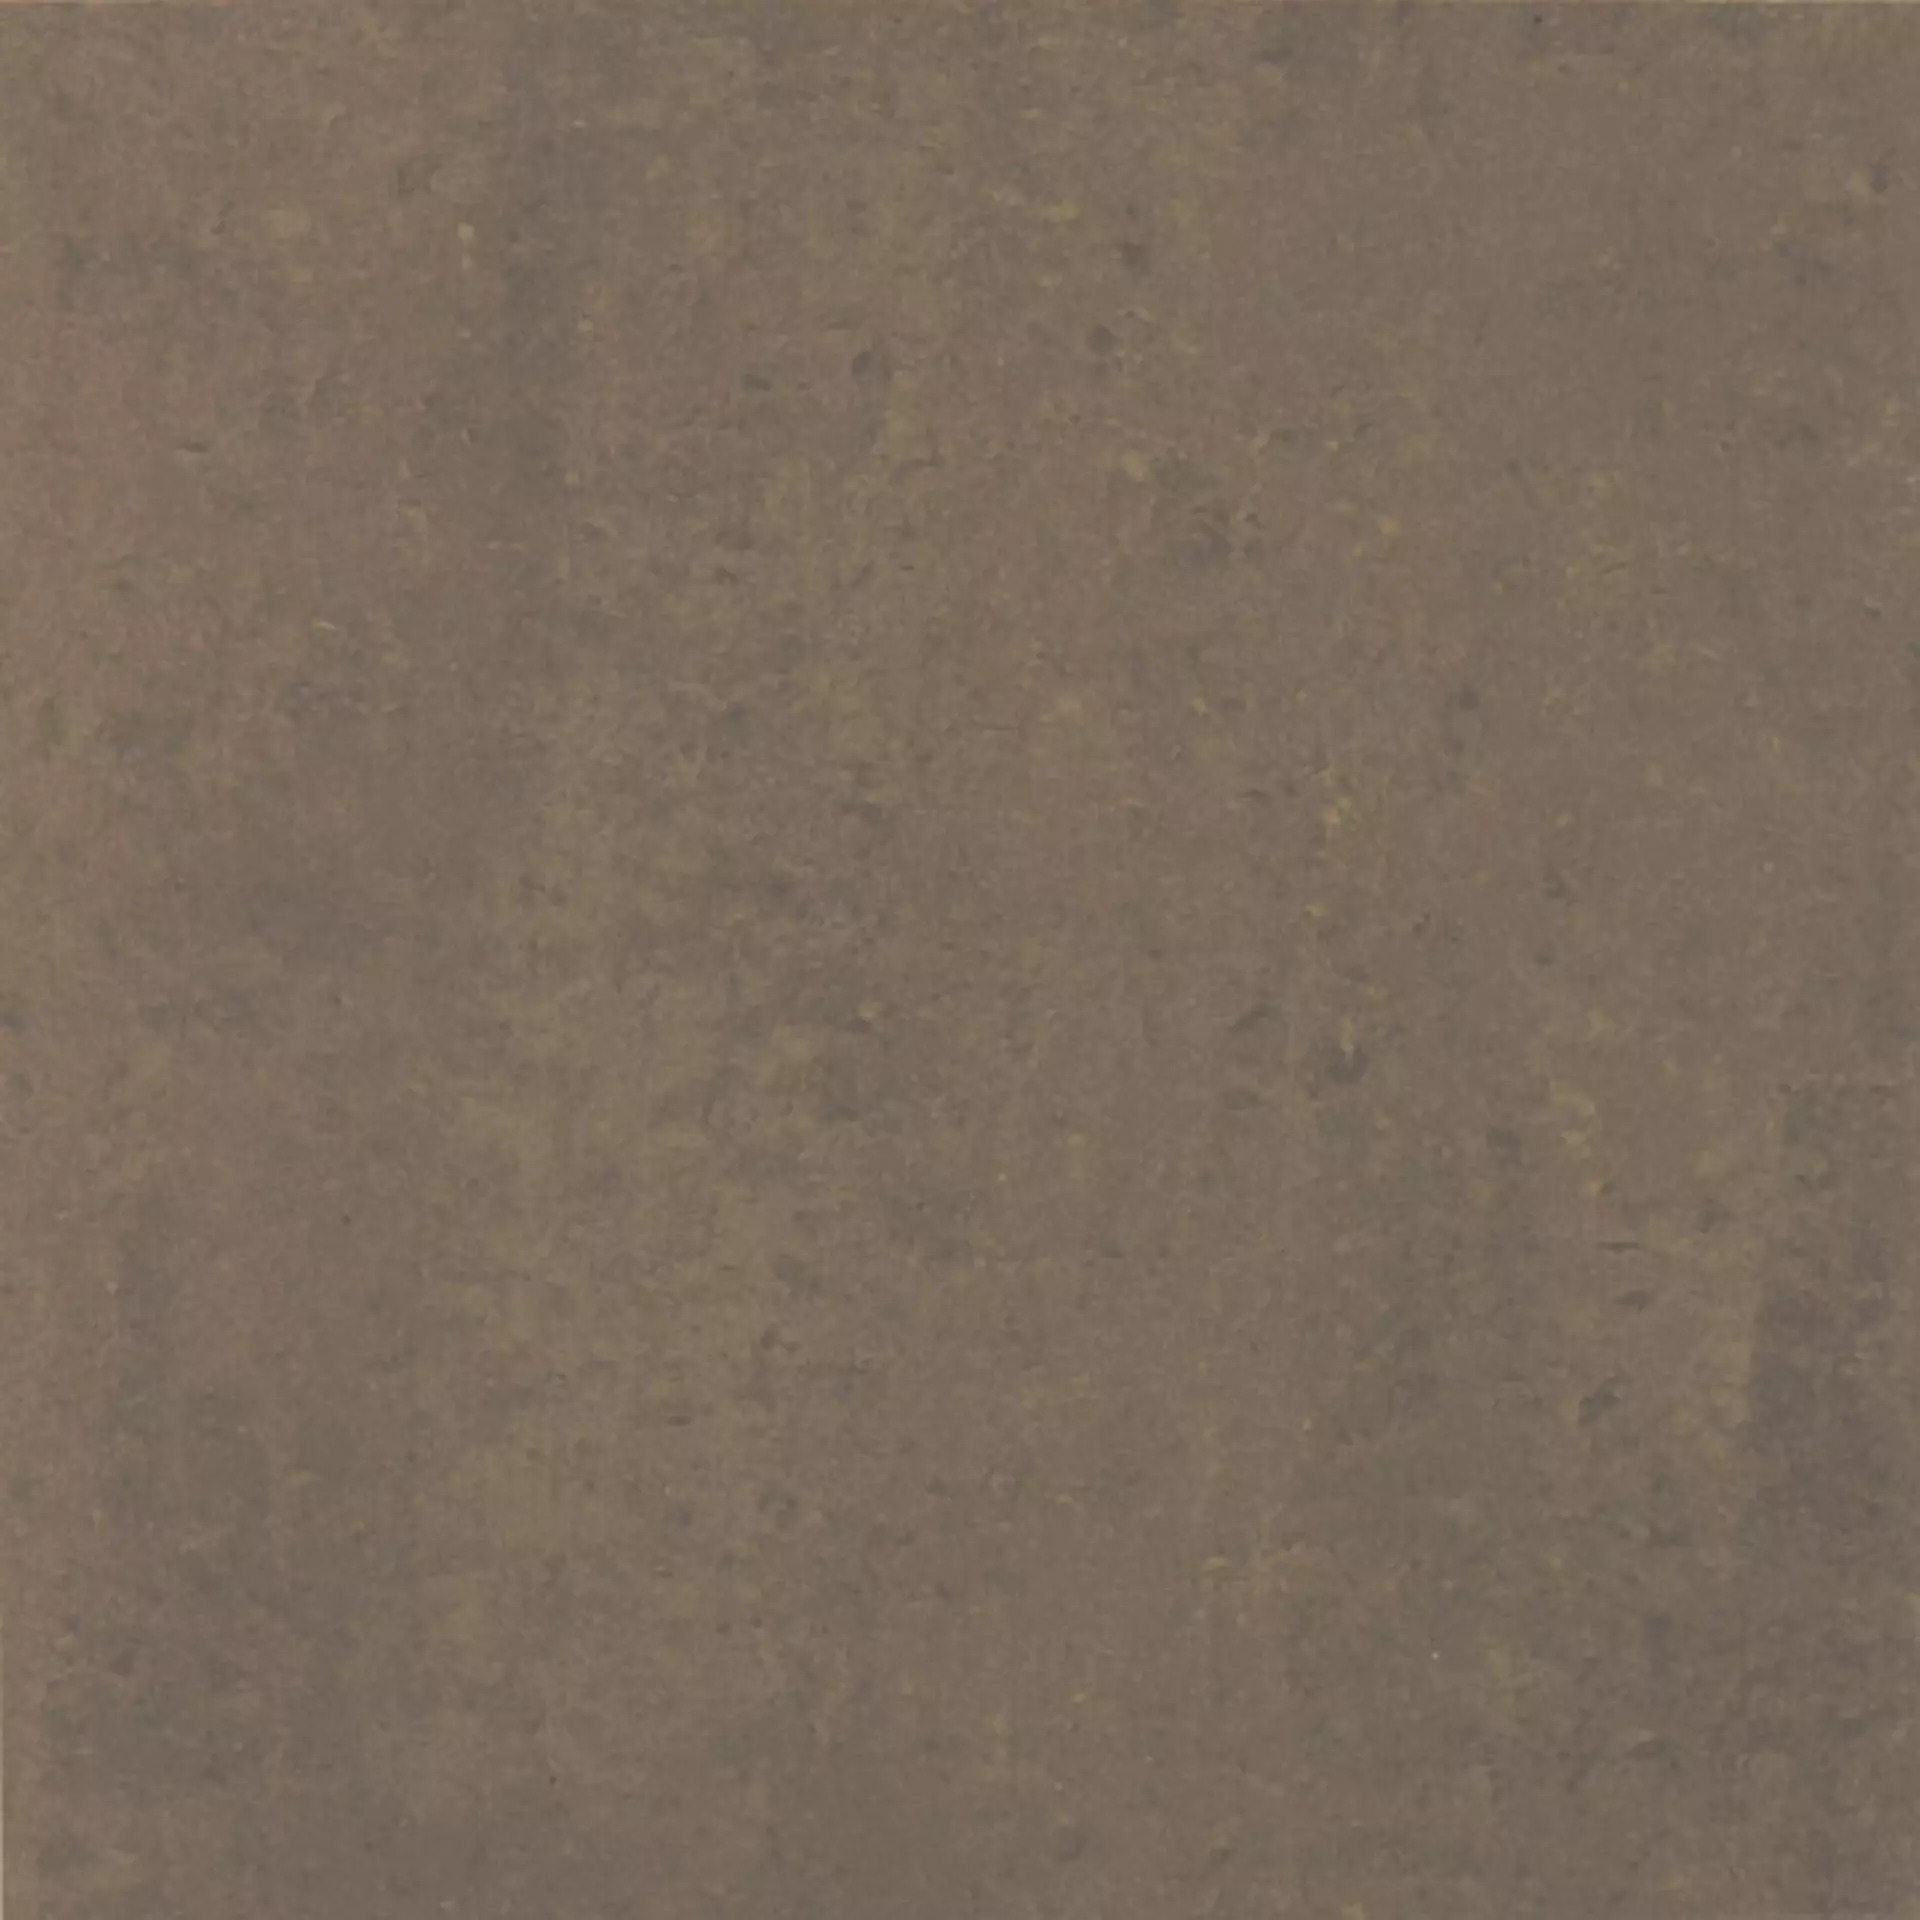 Casalgrande Marte Ramora Brown Naturale – Matt 7700145 30x30cm rectified 9,4mm